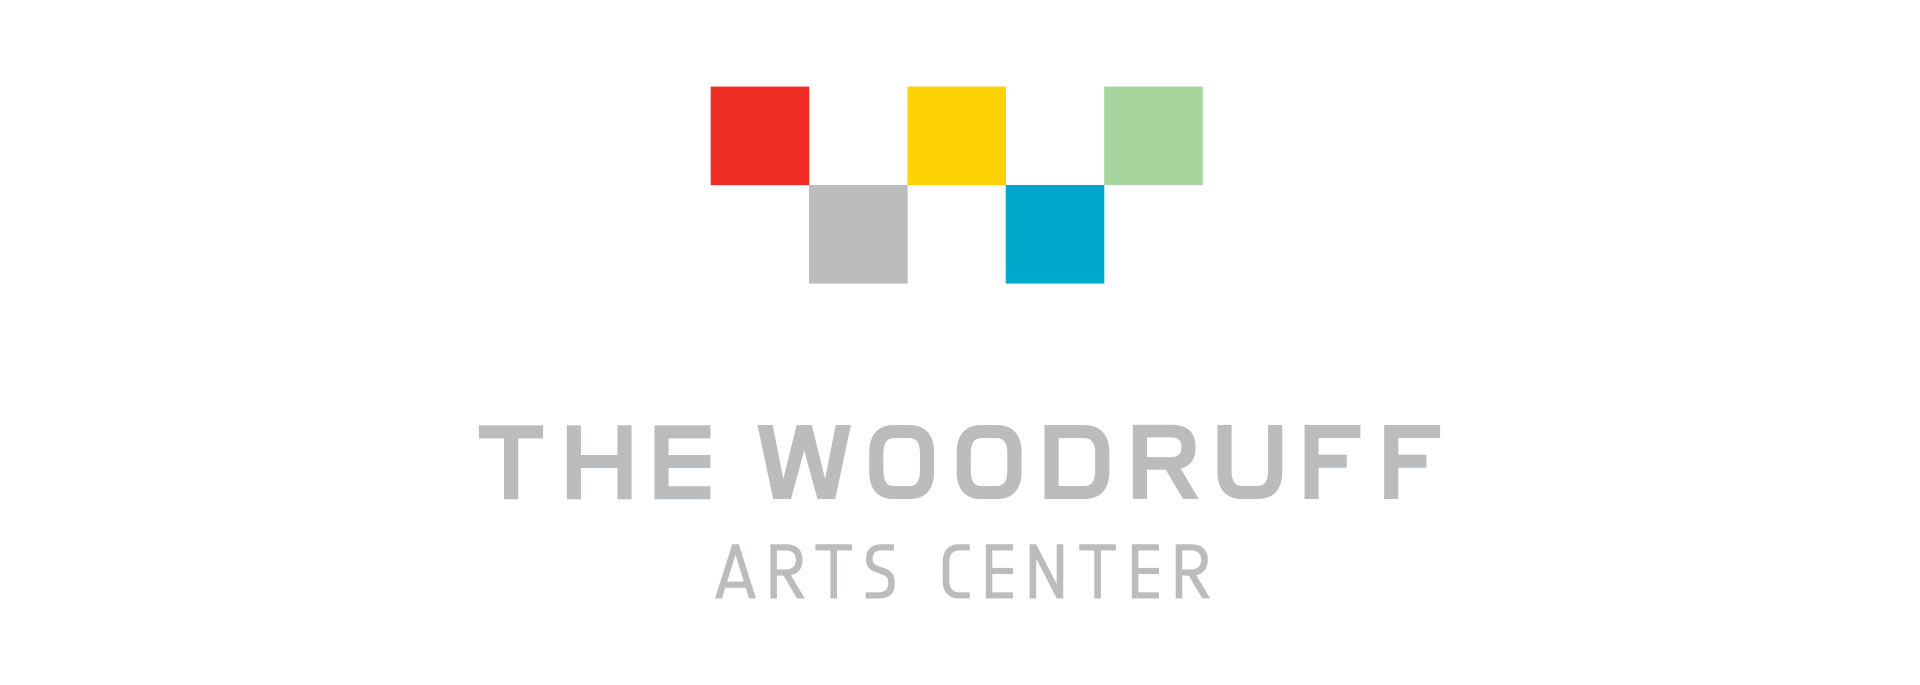 Woodruffs Art Center channel